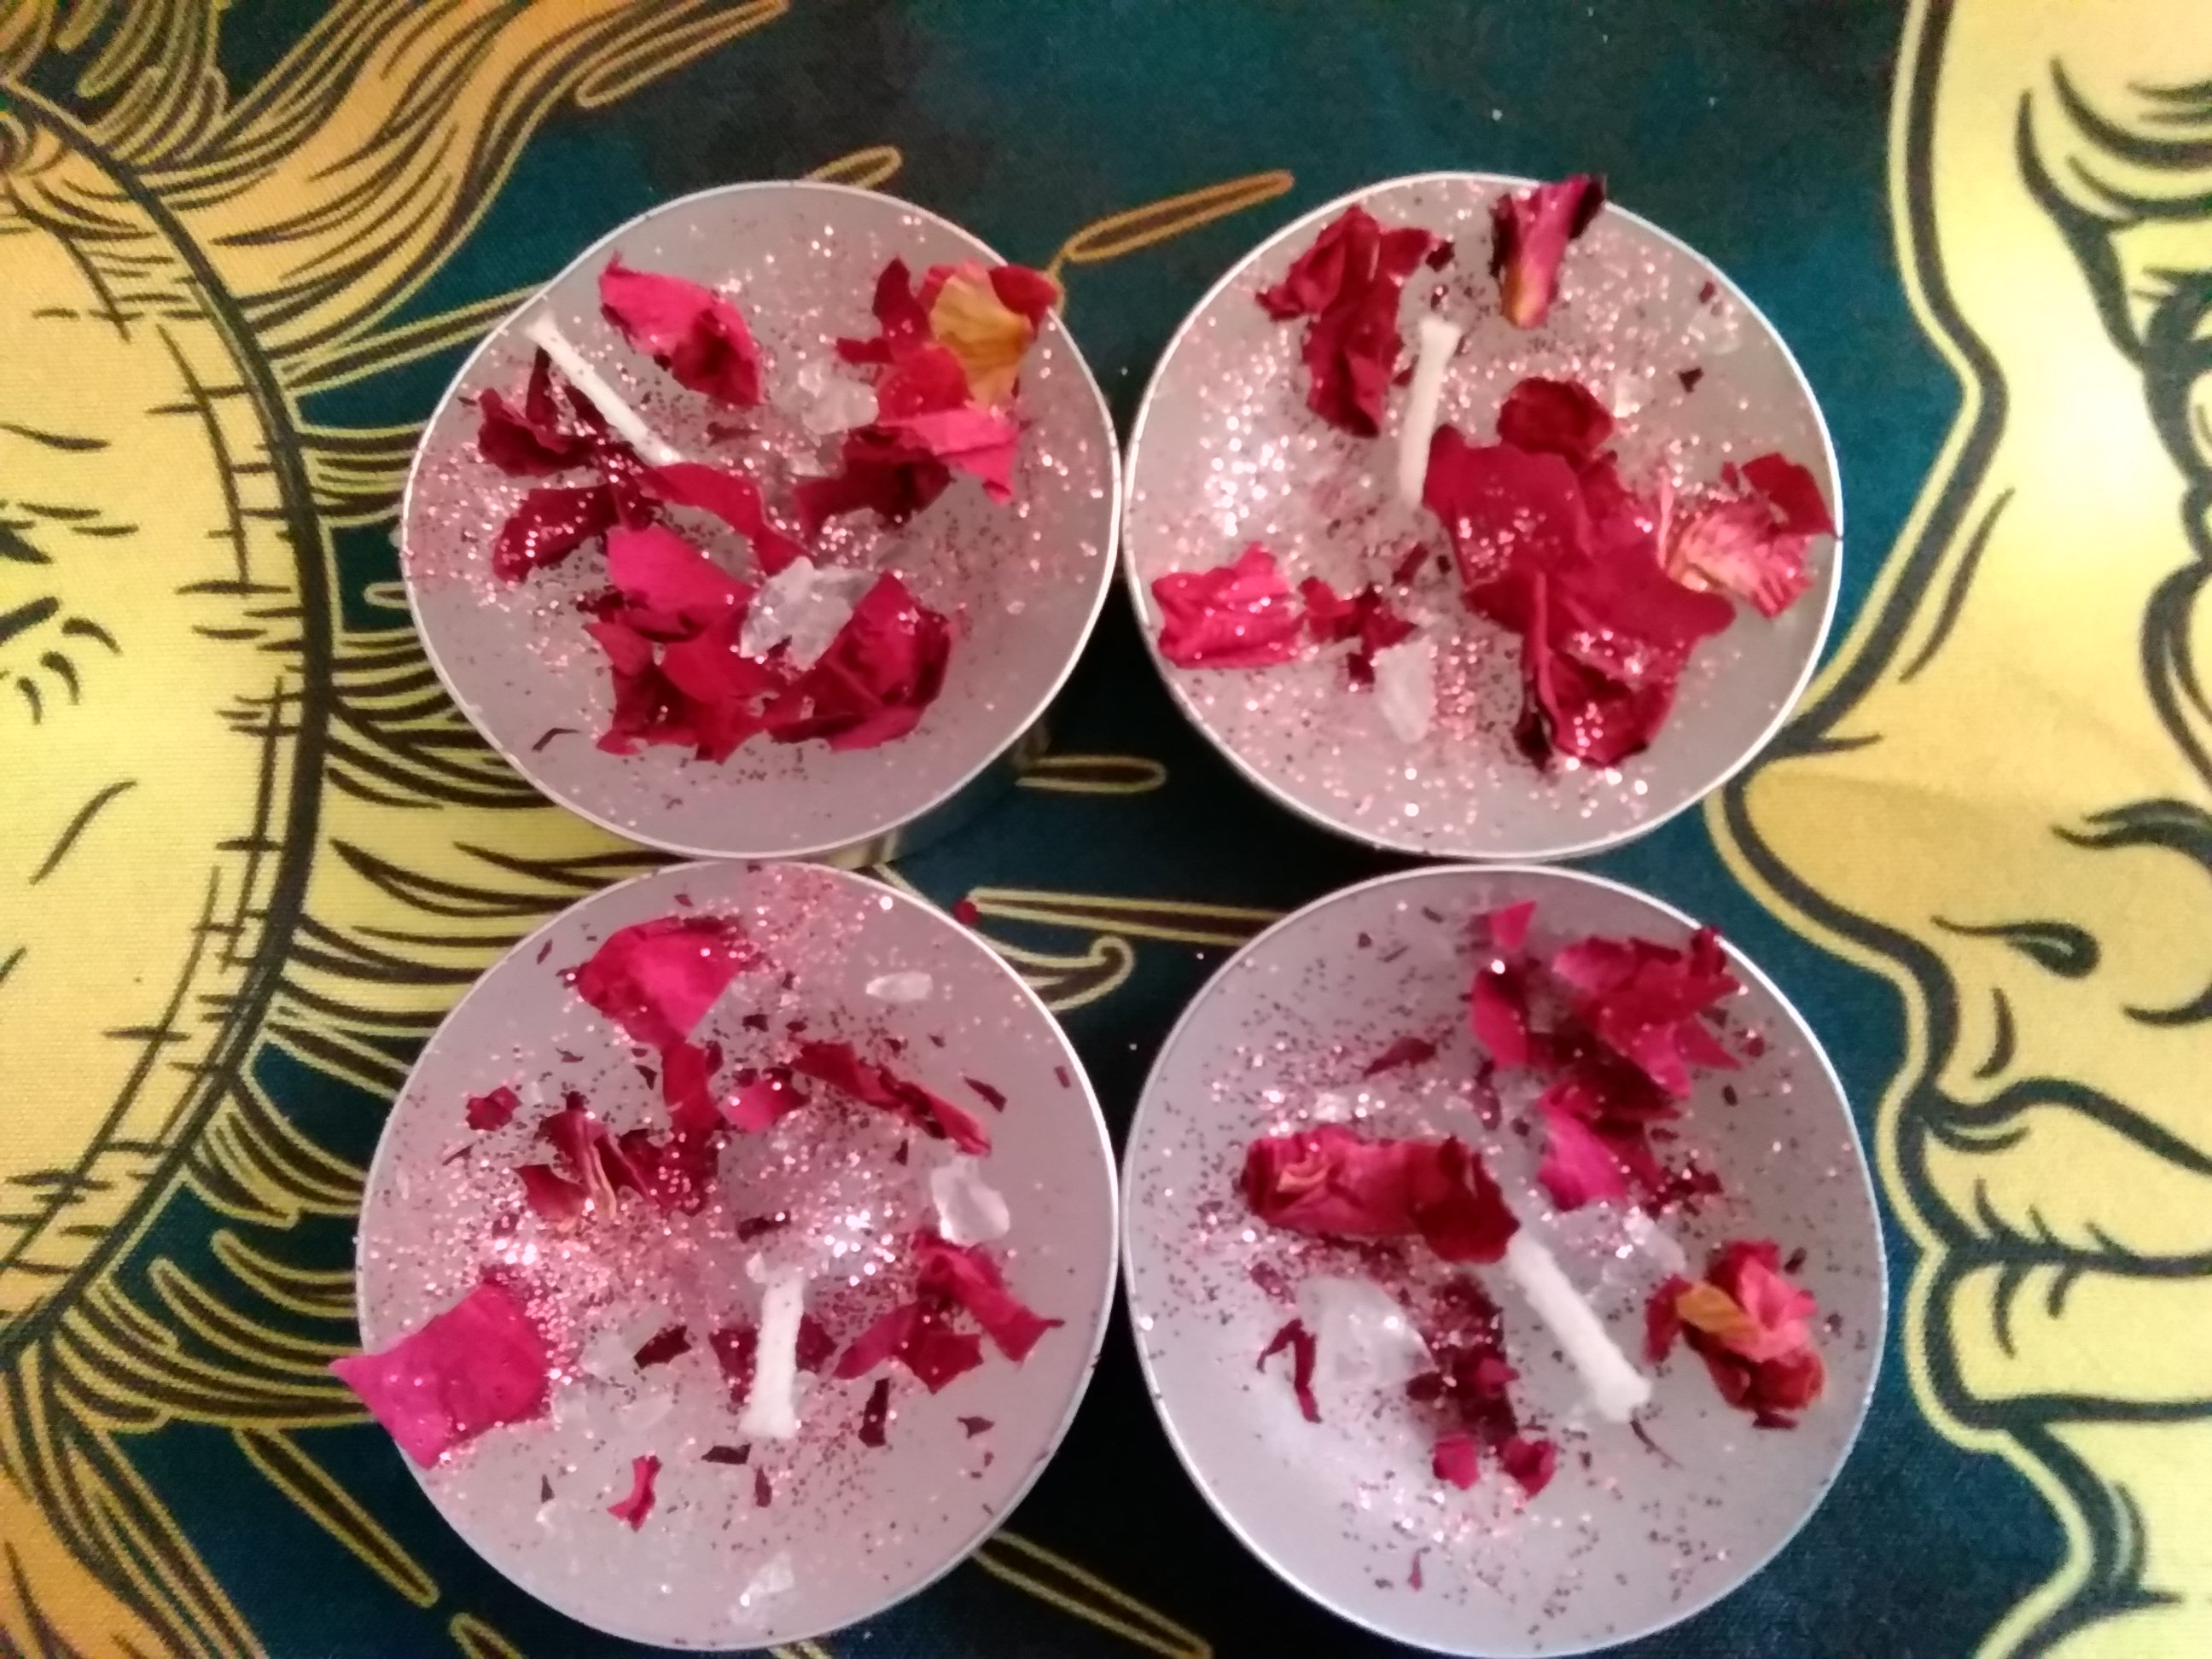 SpellBinders Rose Quartz tea light spell candles 4 pack